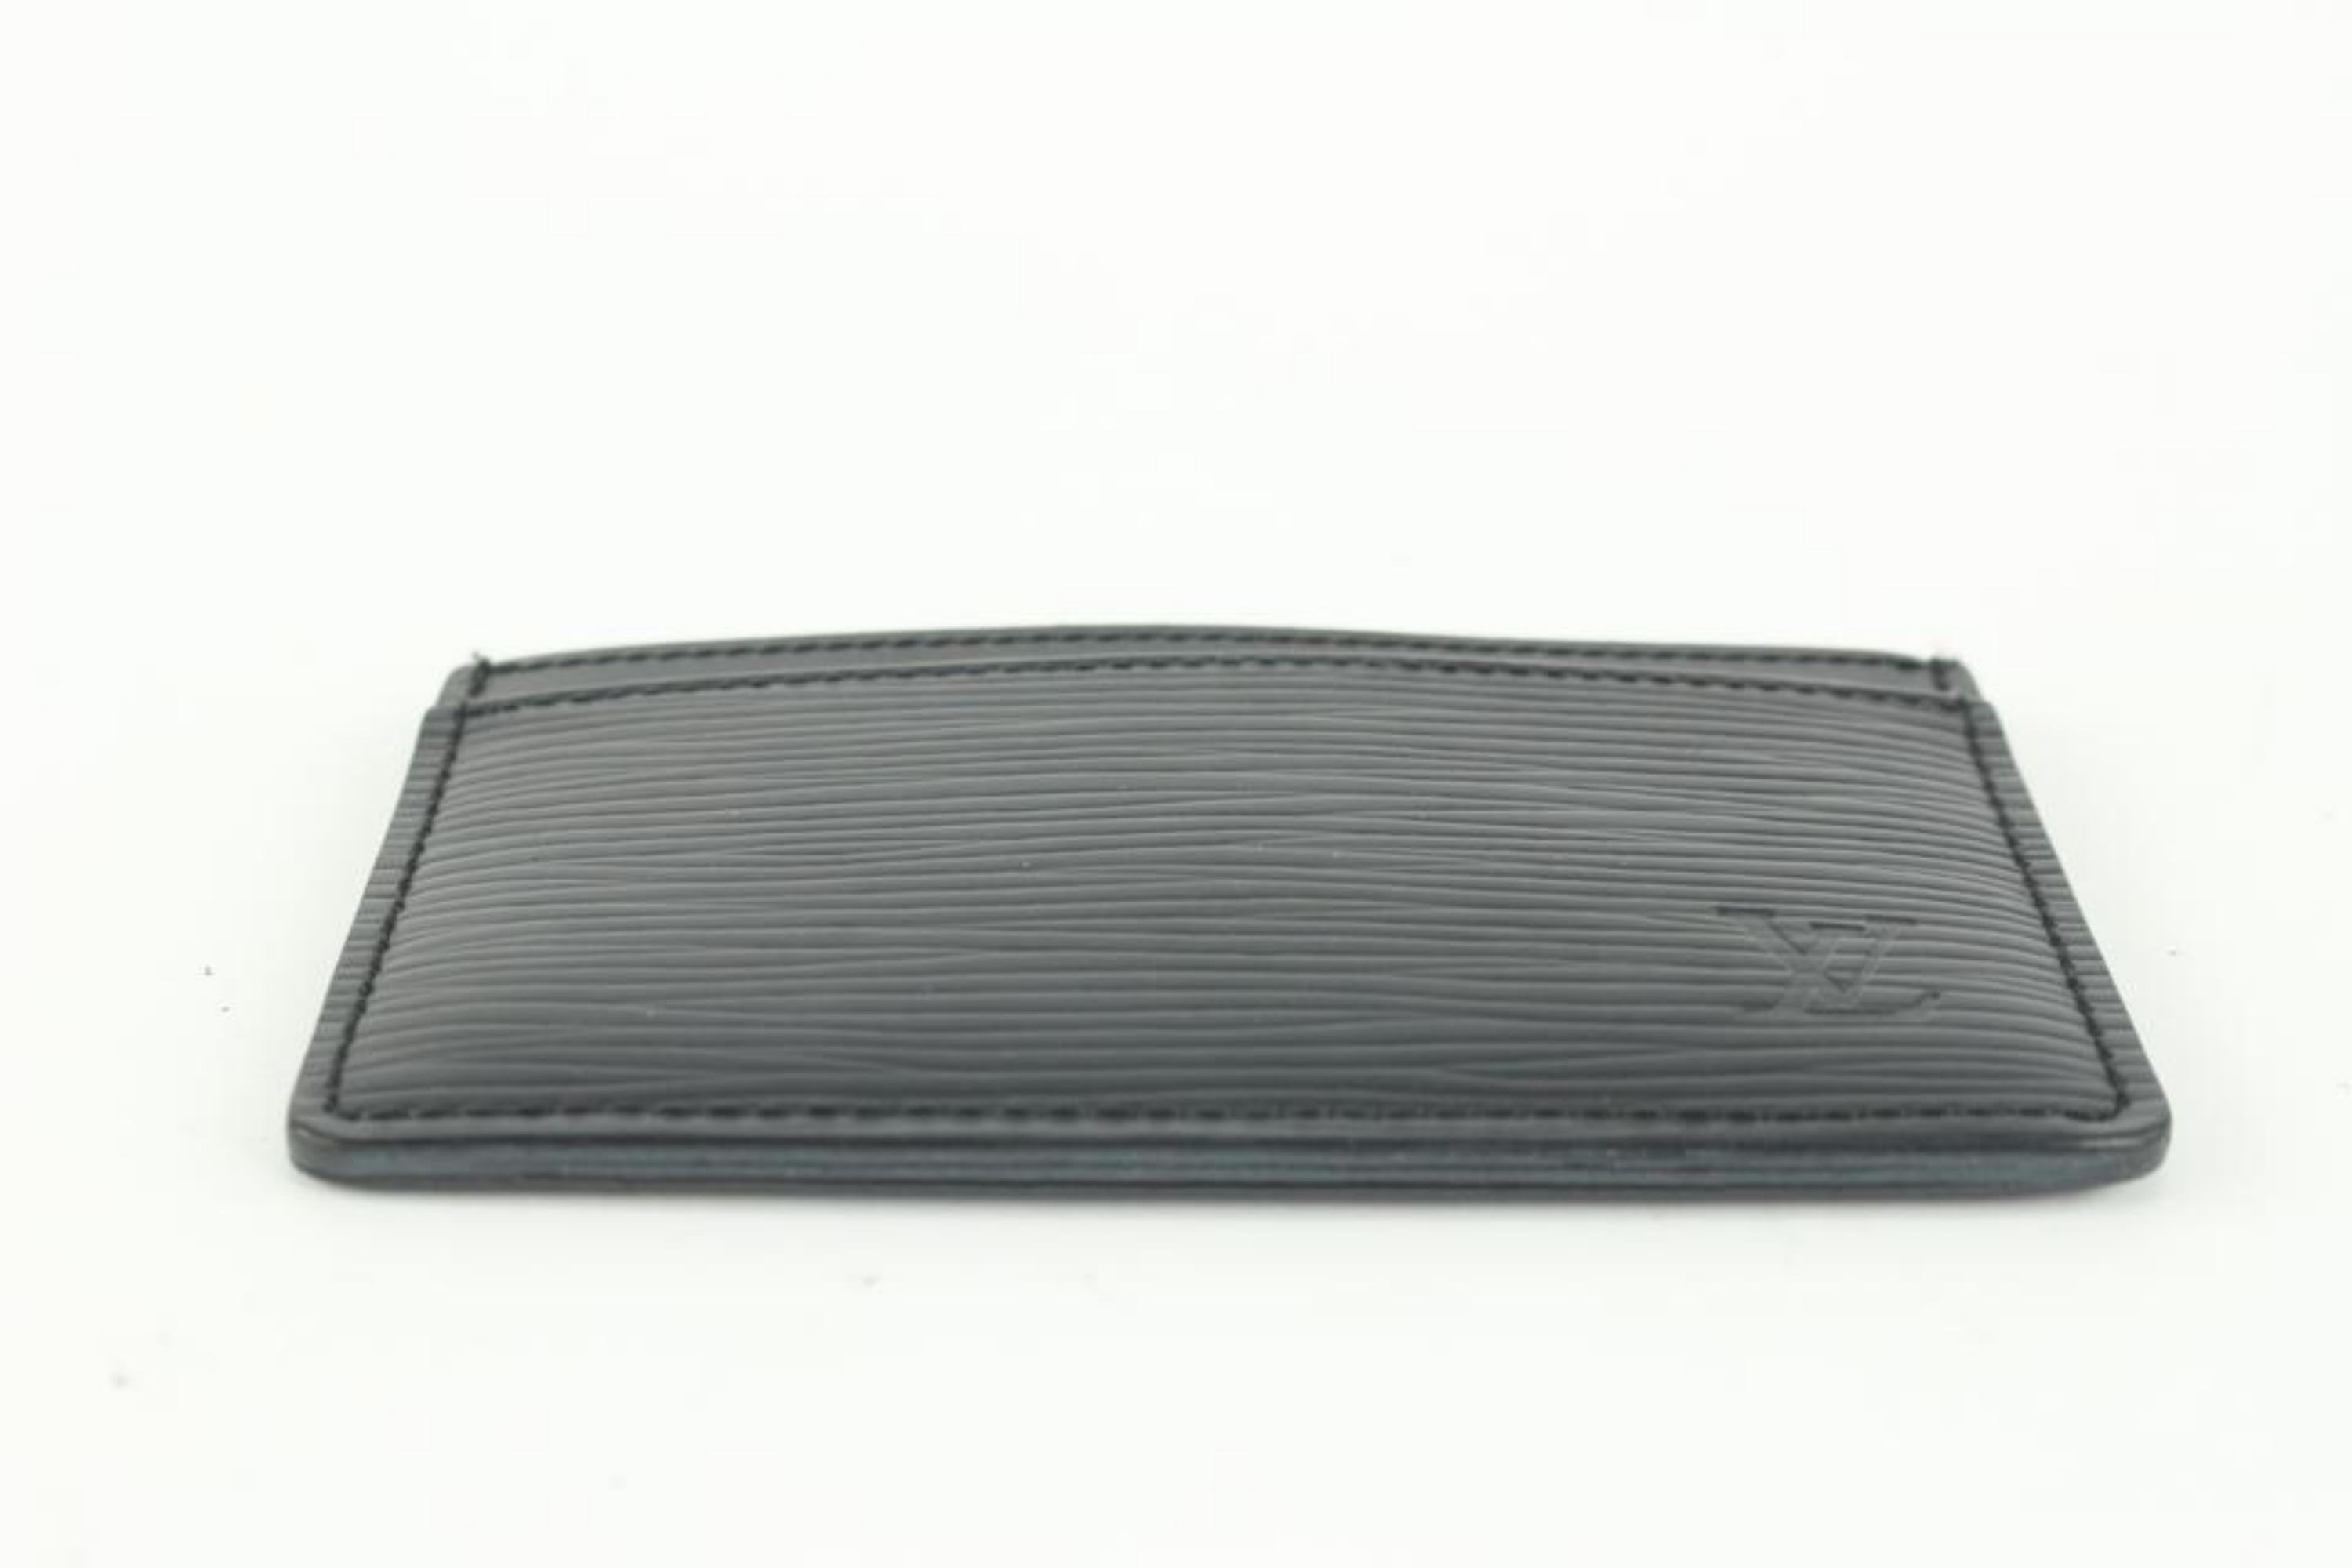 Louis Vuitton Black Epi Leather Noir Card Holder Porte Cartes 1029lv39 3